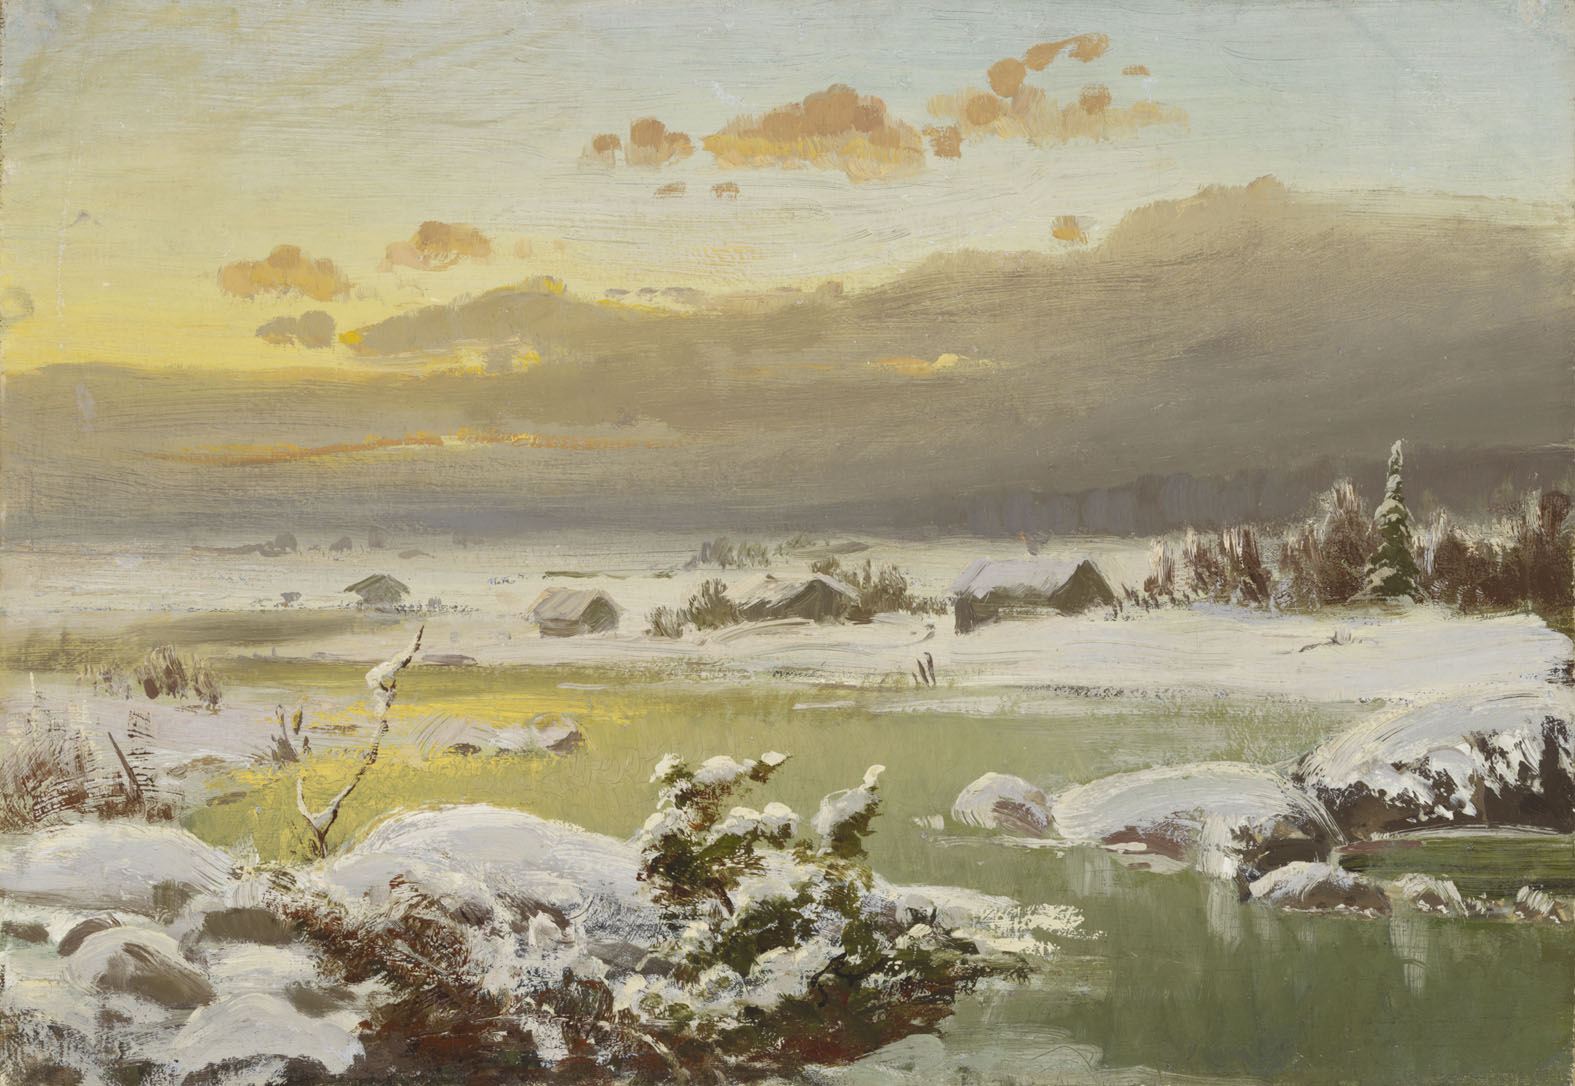 冬日景色 by 范妮· 丘尔伯格 - 1878 - 34 × 48.5 cm 芬兰国家美术馆